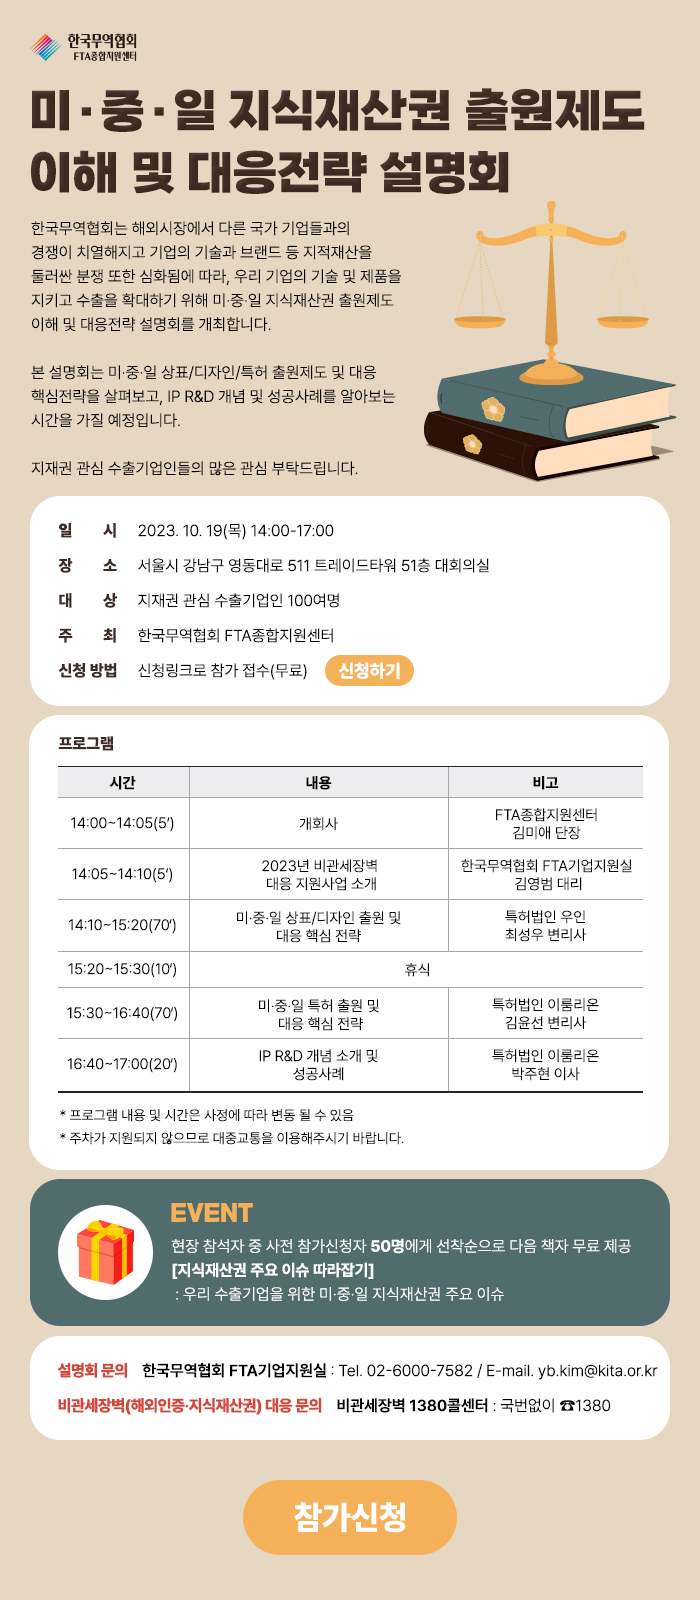 미ㆍ중ㆍ일 지식재산권 출원제도 이해 및 대응전략 설명회 개최 안내